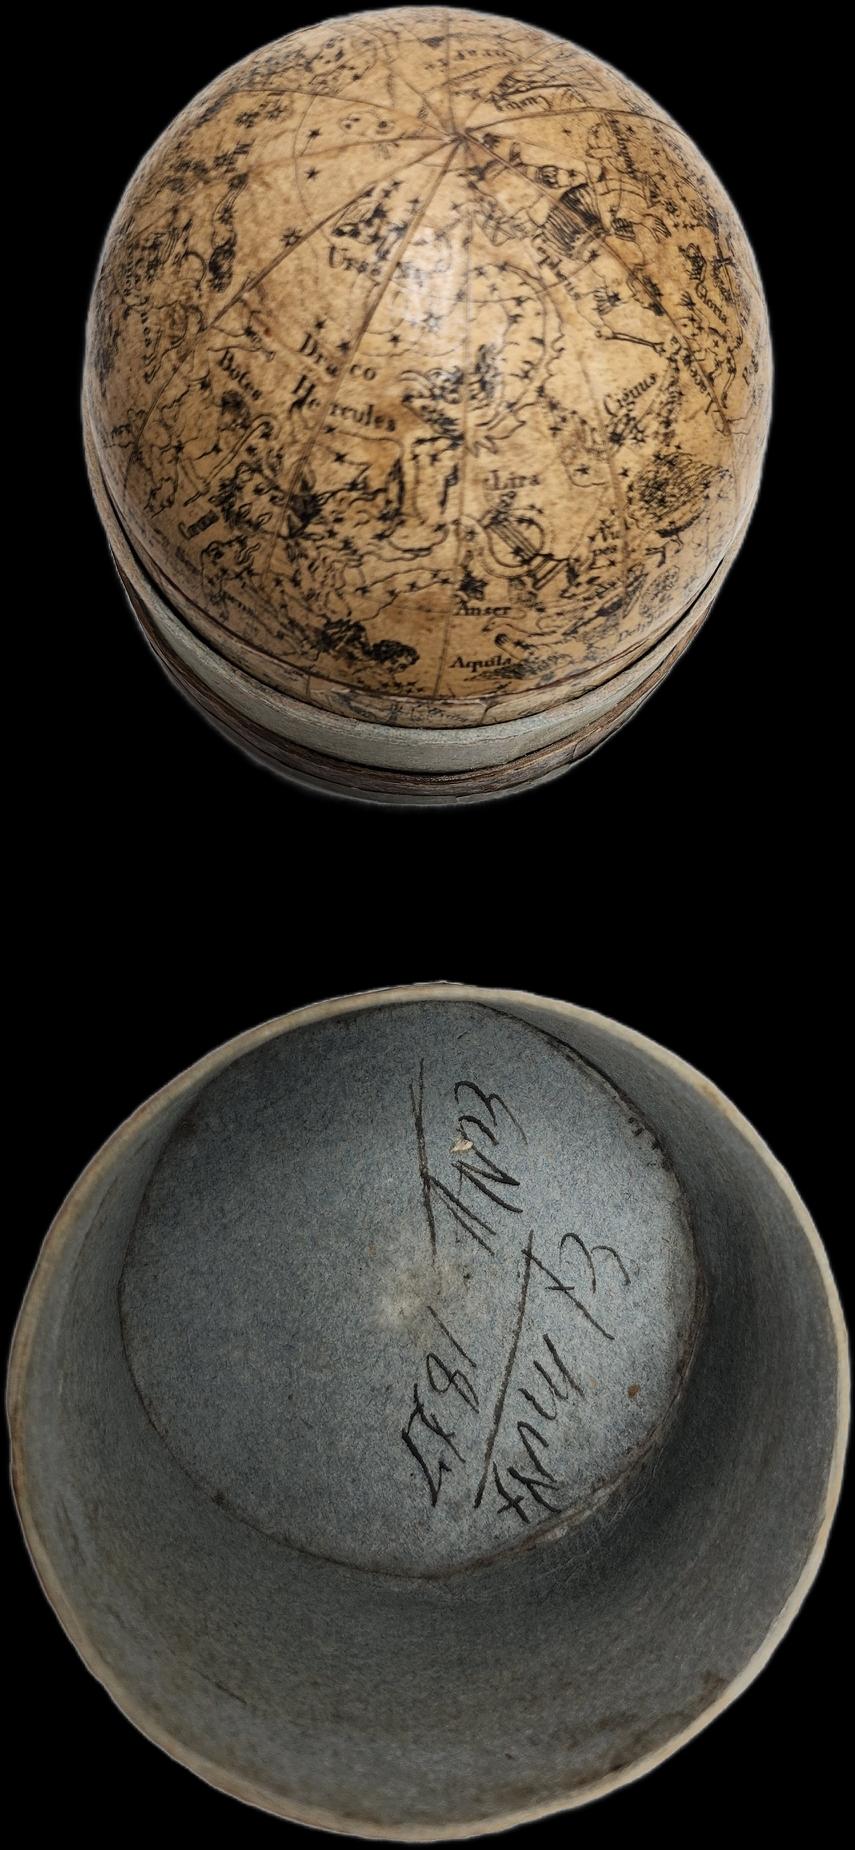 Herausgeber:        Carl Bauer (Deutschland, 1780-1857)
Ort / Datum:	Nürnberg, um 1840
Größe:		Durchmesser Globen 6,5 cm.
	
Erd- und Himmelsglobus 